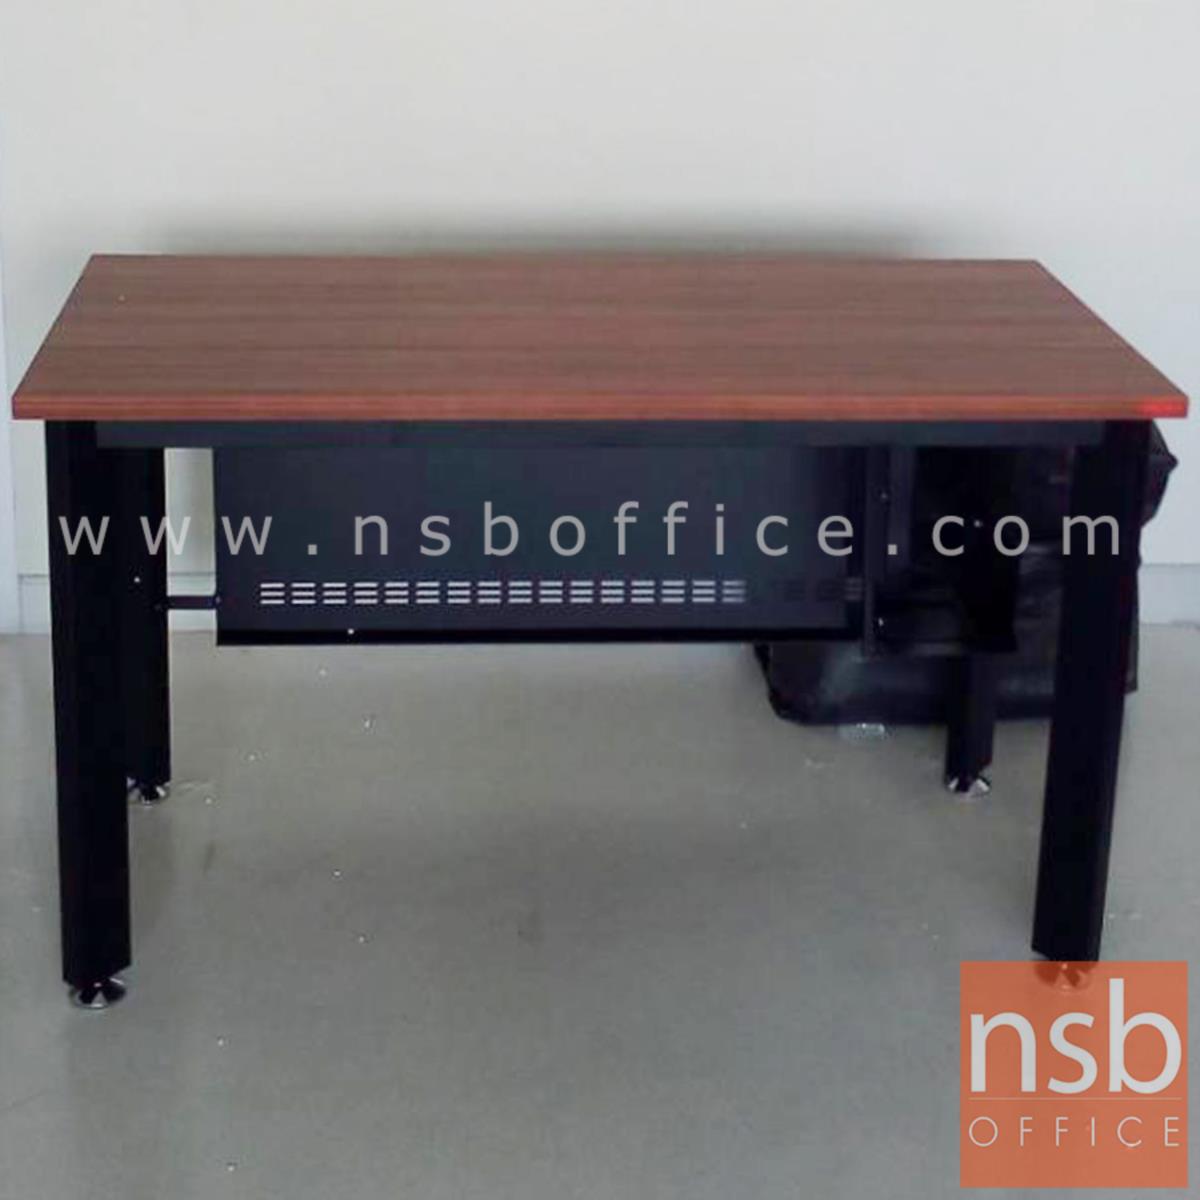 โต๊ะทำงาน  รุ่น Imperial (อิมพีเรียล) ขนาด 120W ,150W cm.  พร้อมบังตาเหล็ก สีวอลนัทตัดดำ